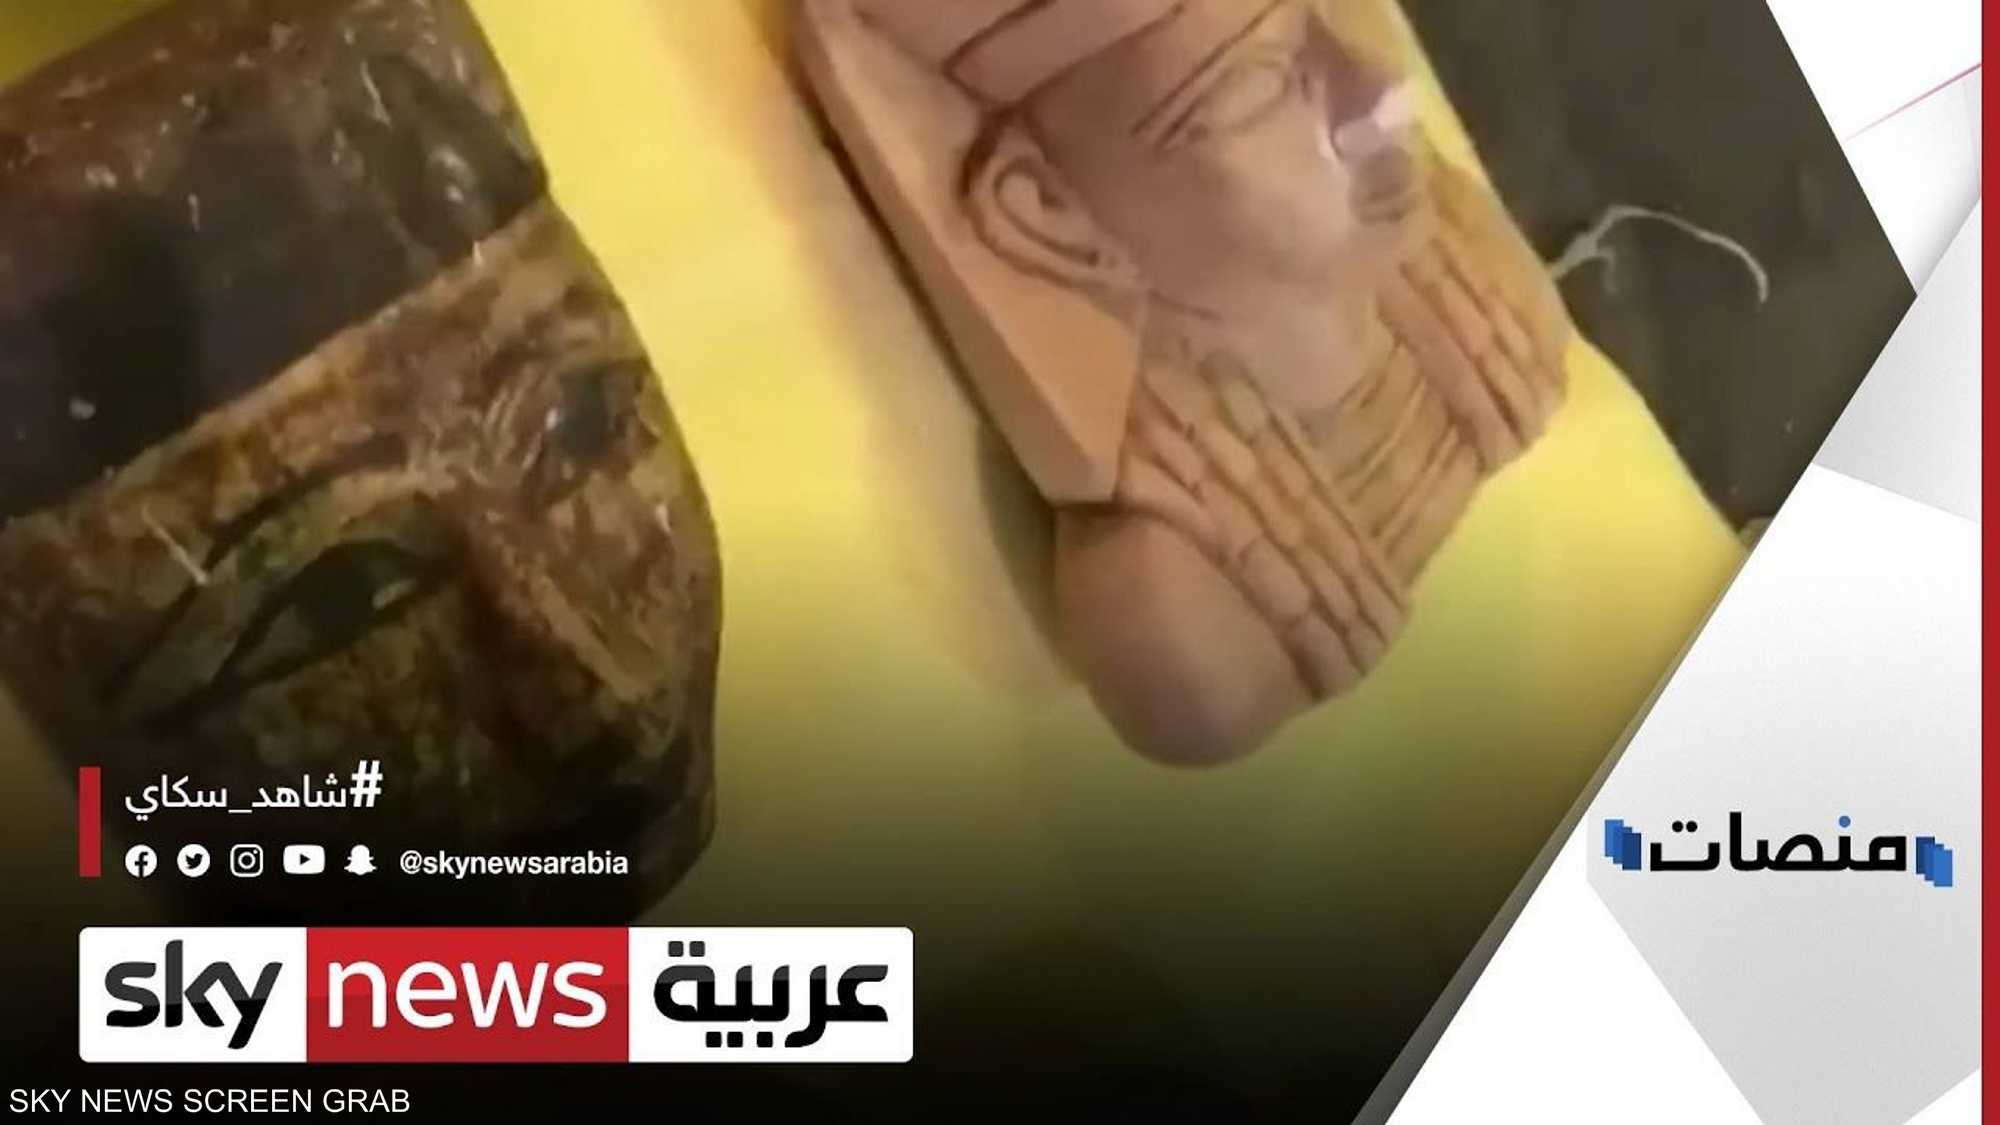 الكويت تحبط تهريب آثار فرعونية للمرة الثالثة خلال عامين